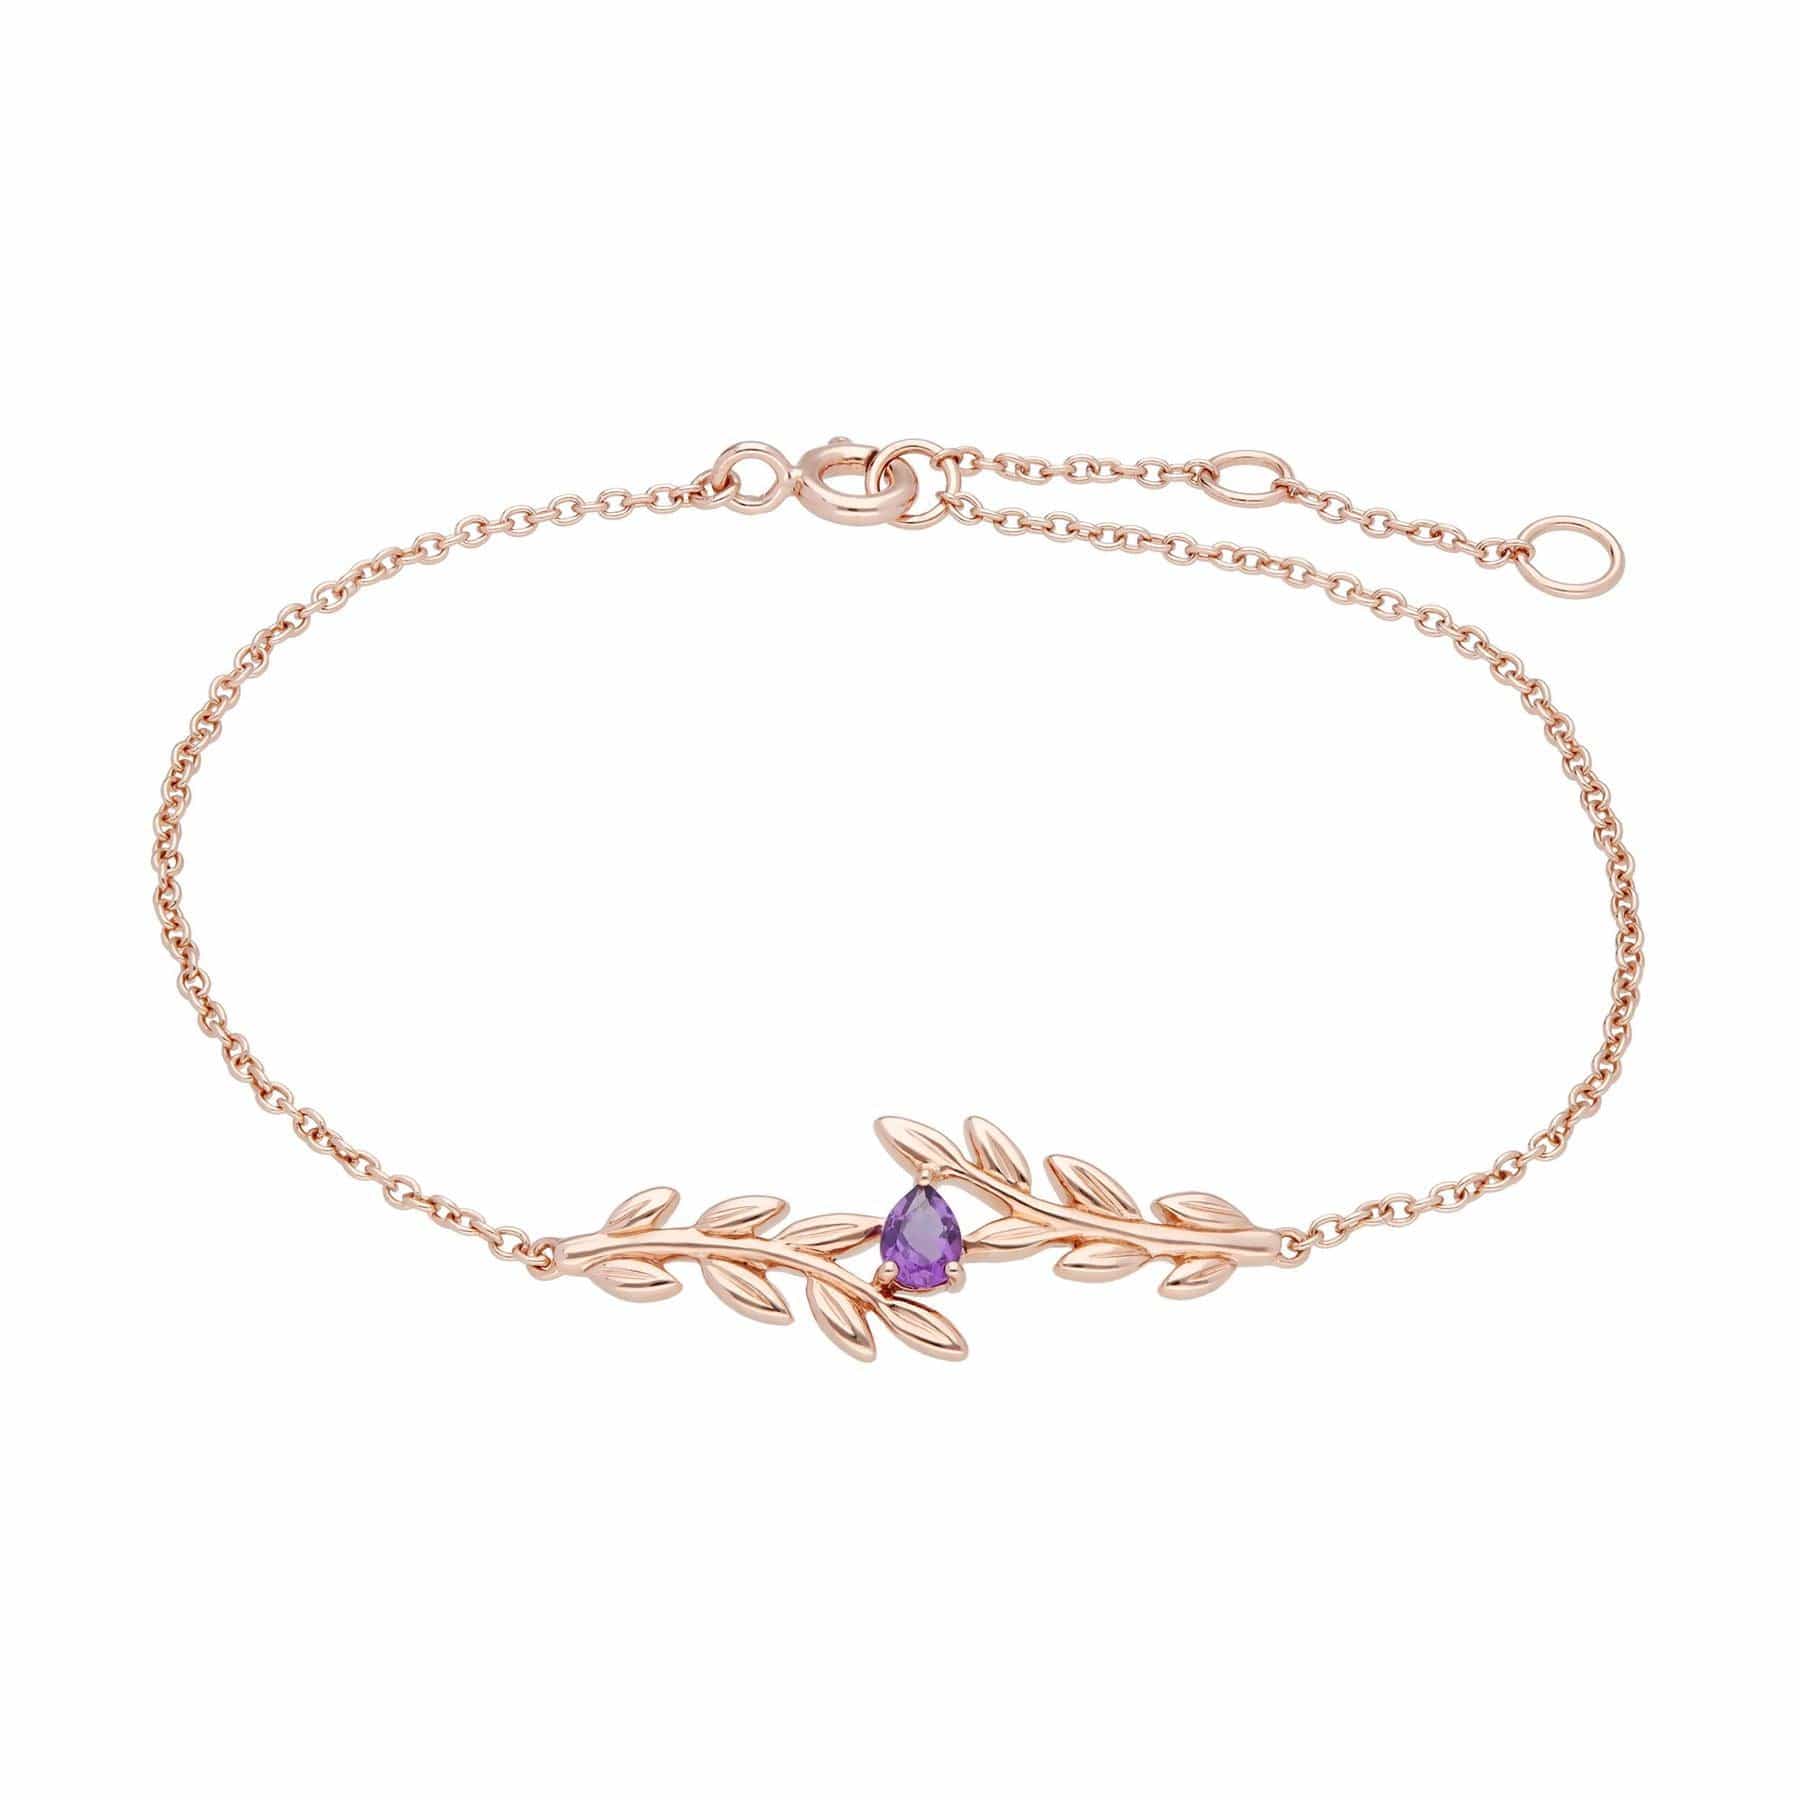 135L0306019-135R1862019 O Leaf Amethyst Bracelet & Ring Set in 9ct Rose Gold 2